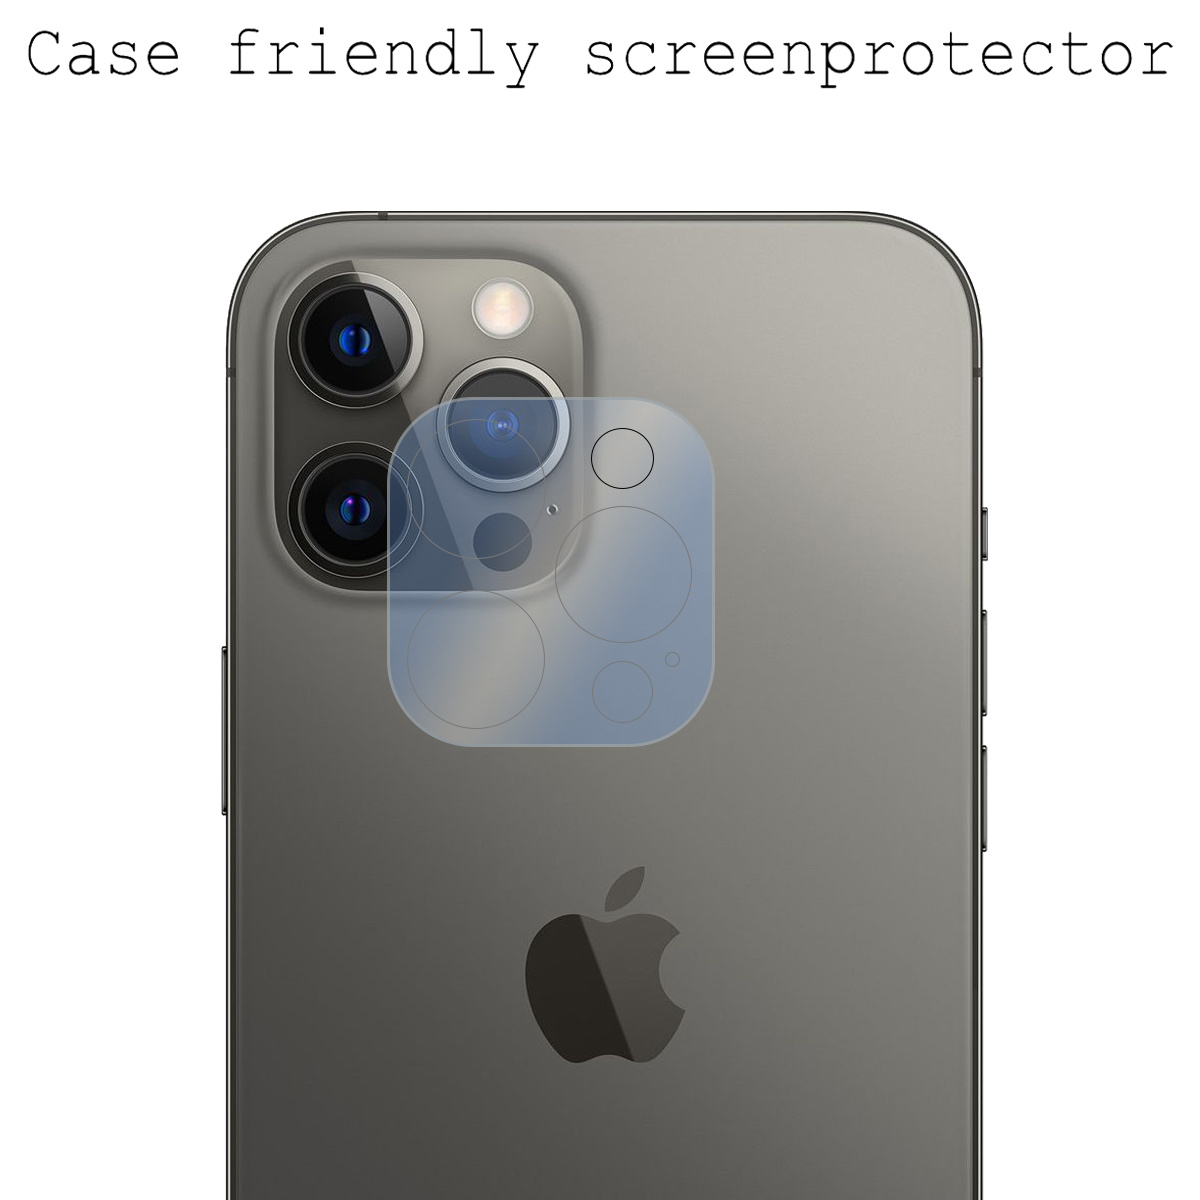 BASEY. Screenprotector voor iPhone 14 Pro Max Camera Screenprotector Tempered Glass - Screenprotector voor iPhone 14 Pro Max Beschermglas Voor Camera - 3 Stuks